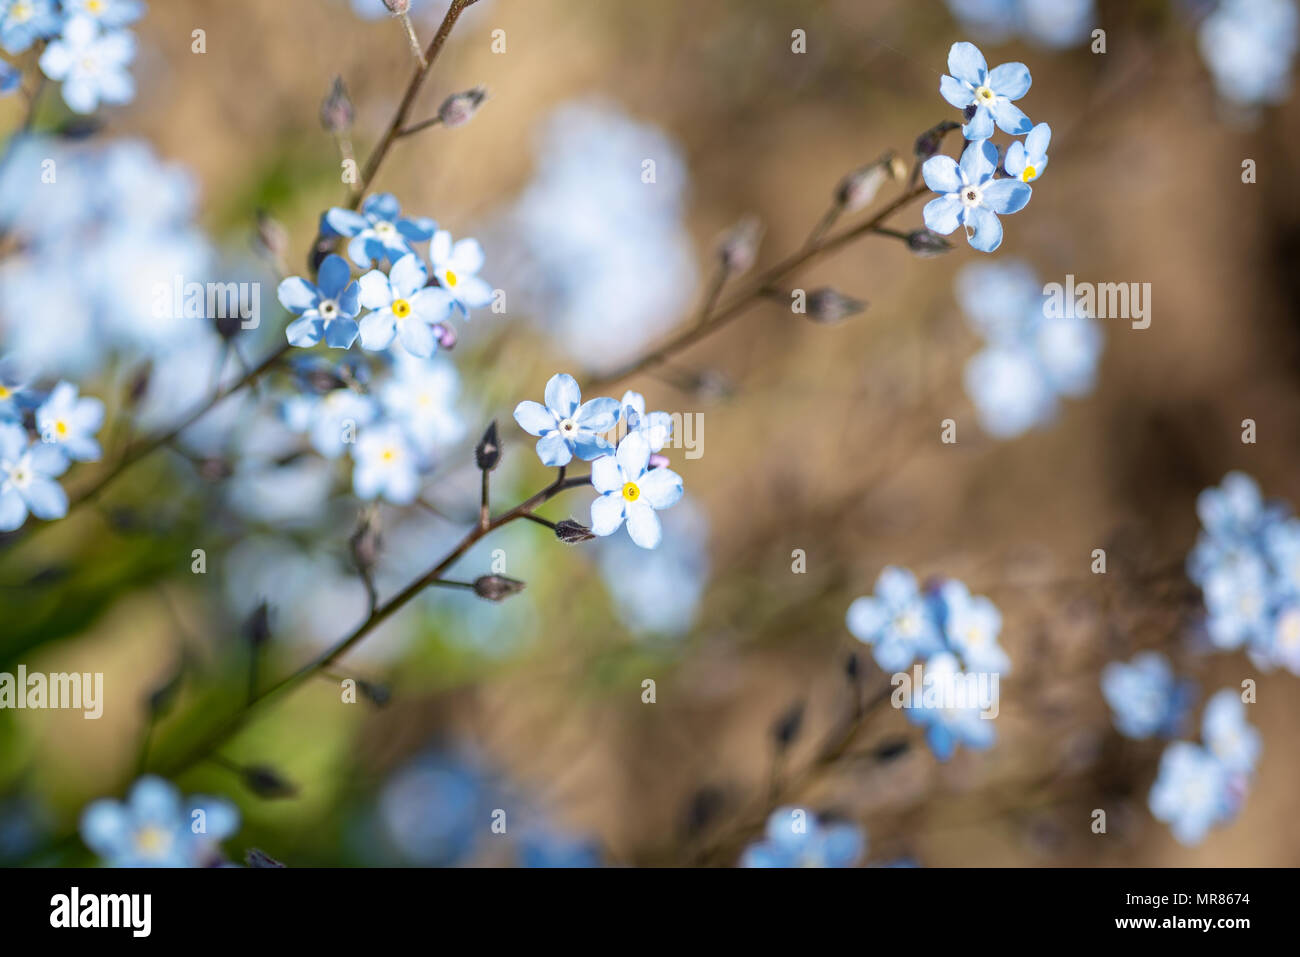 Bokeh doux photo. Les petites fleurs bleues forget-me-not le domaine, tonification Banque D'Images